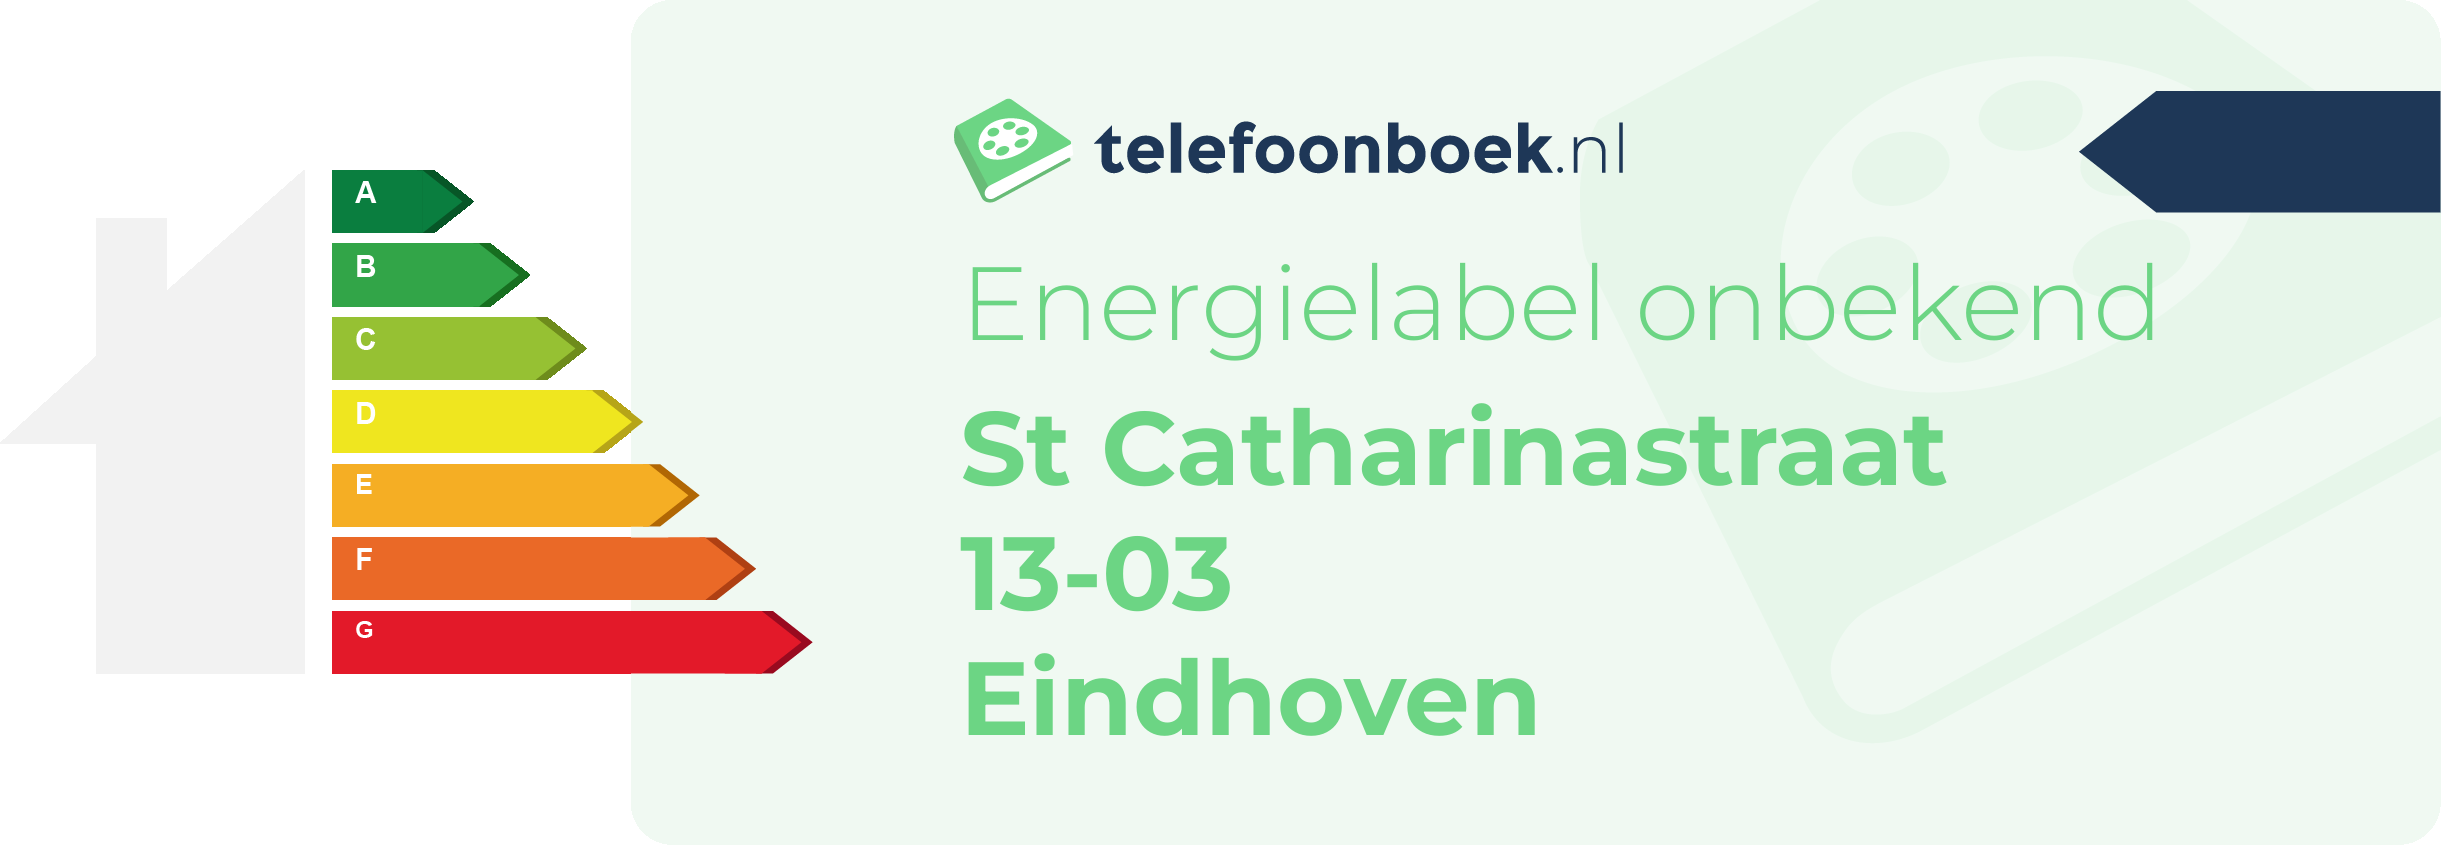 Energielabel St Catharinastraat 13-03 Eindhoven